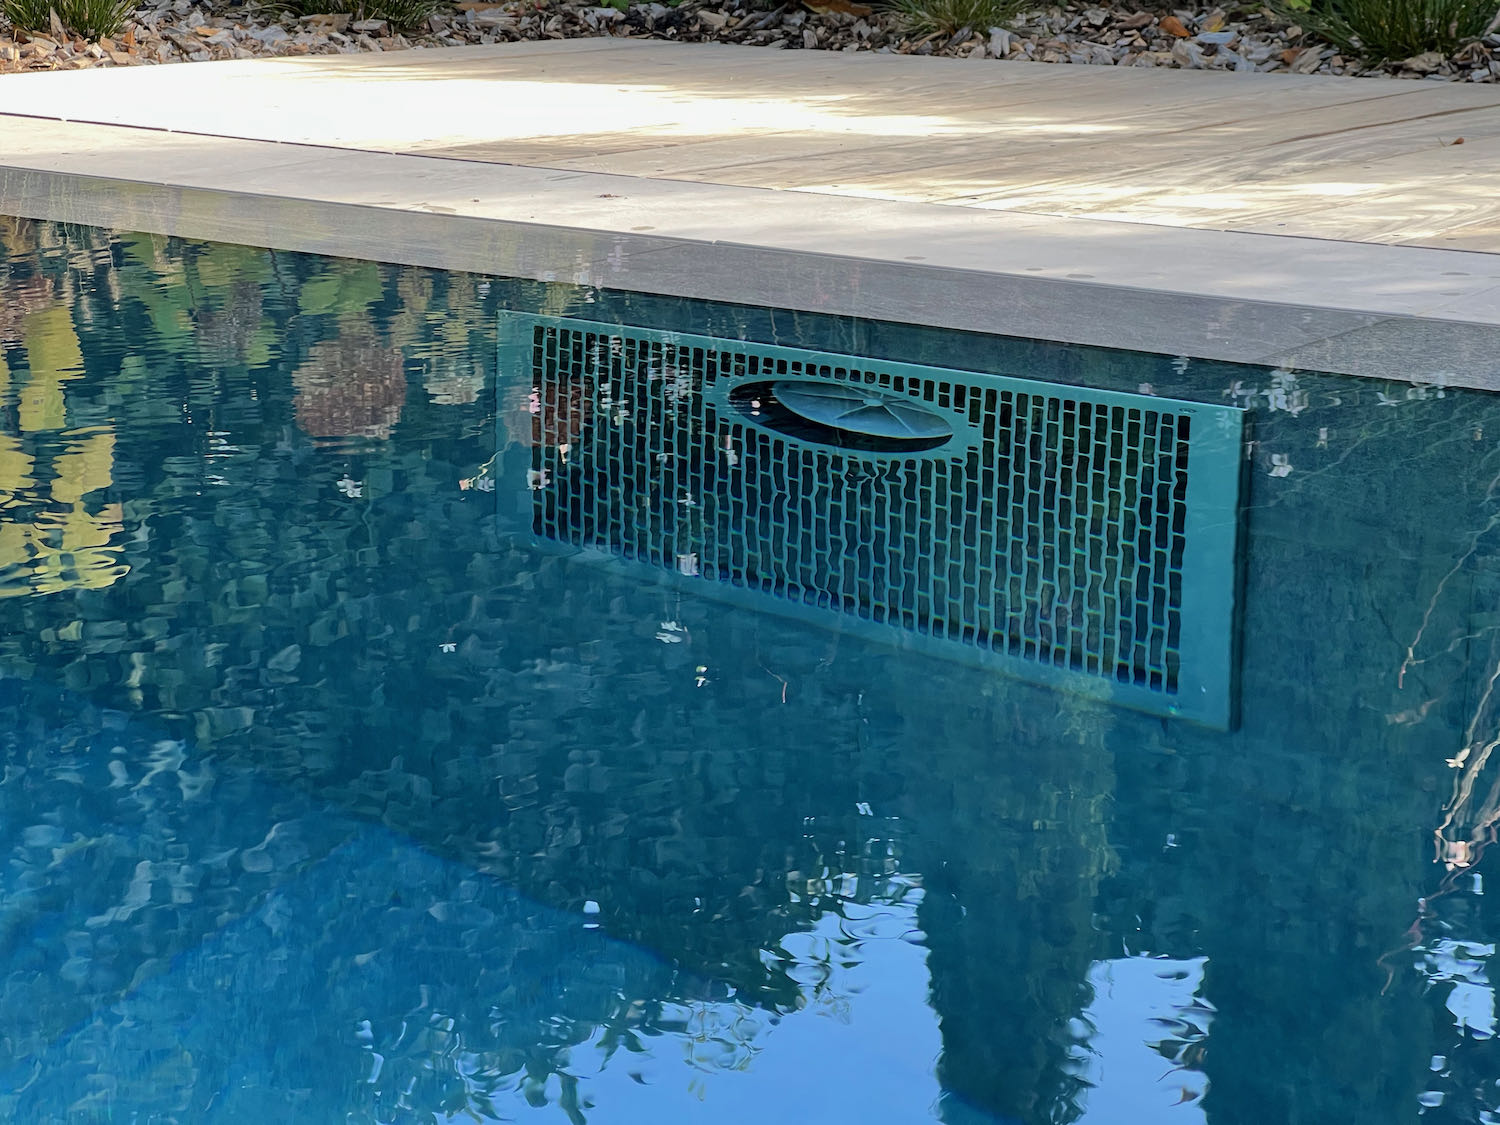 Création piscine miroir avec carrelage, volet solaire et nage à contre-courant à Genève